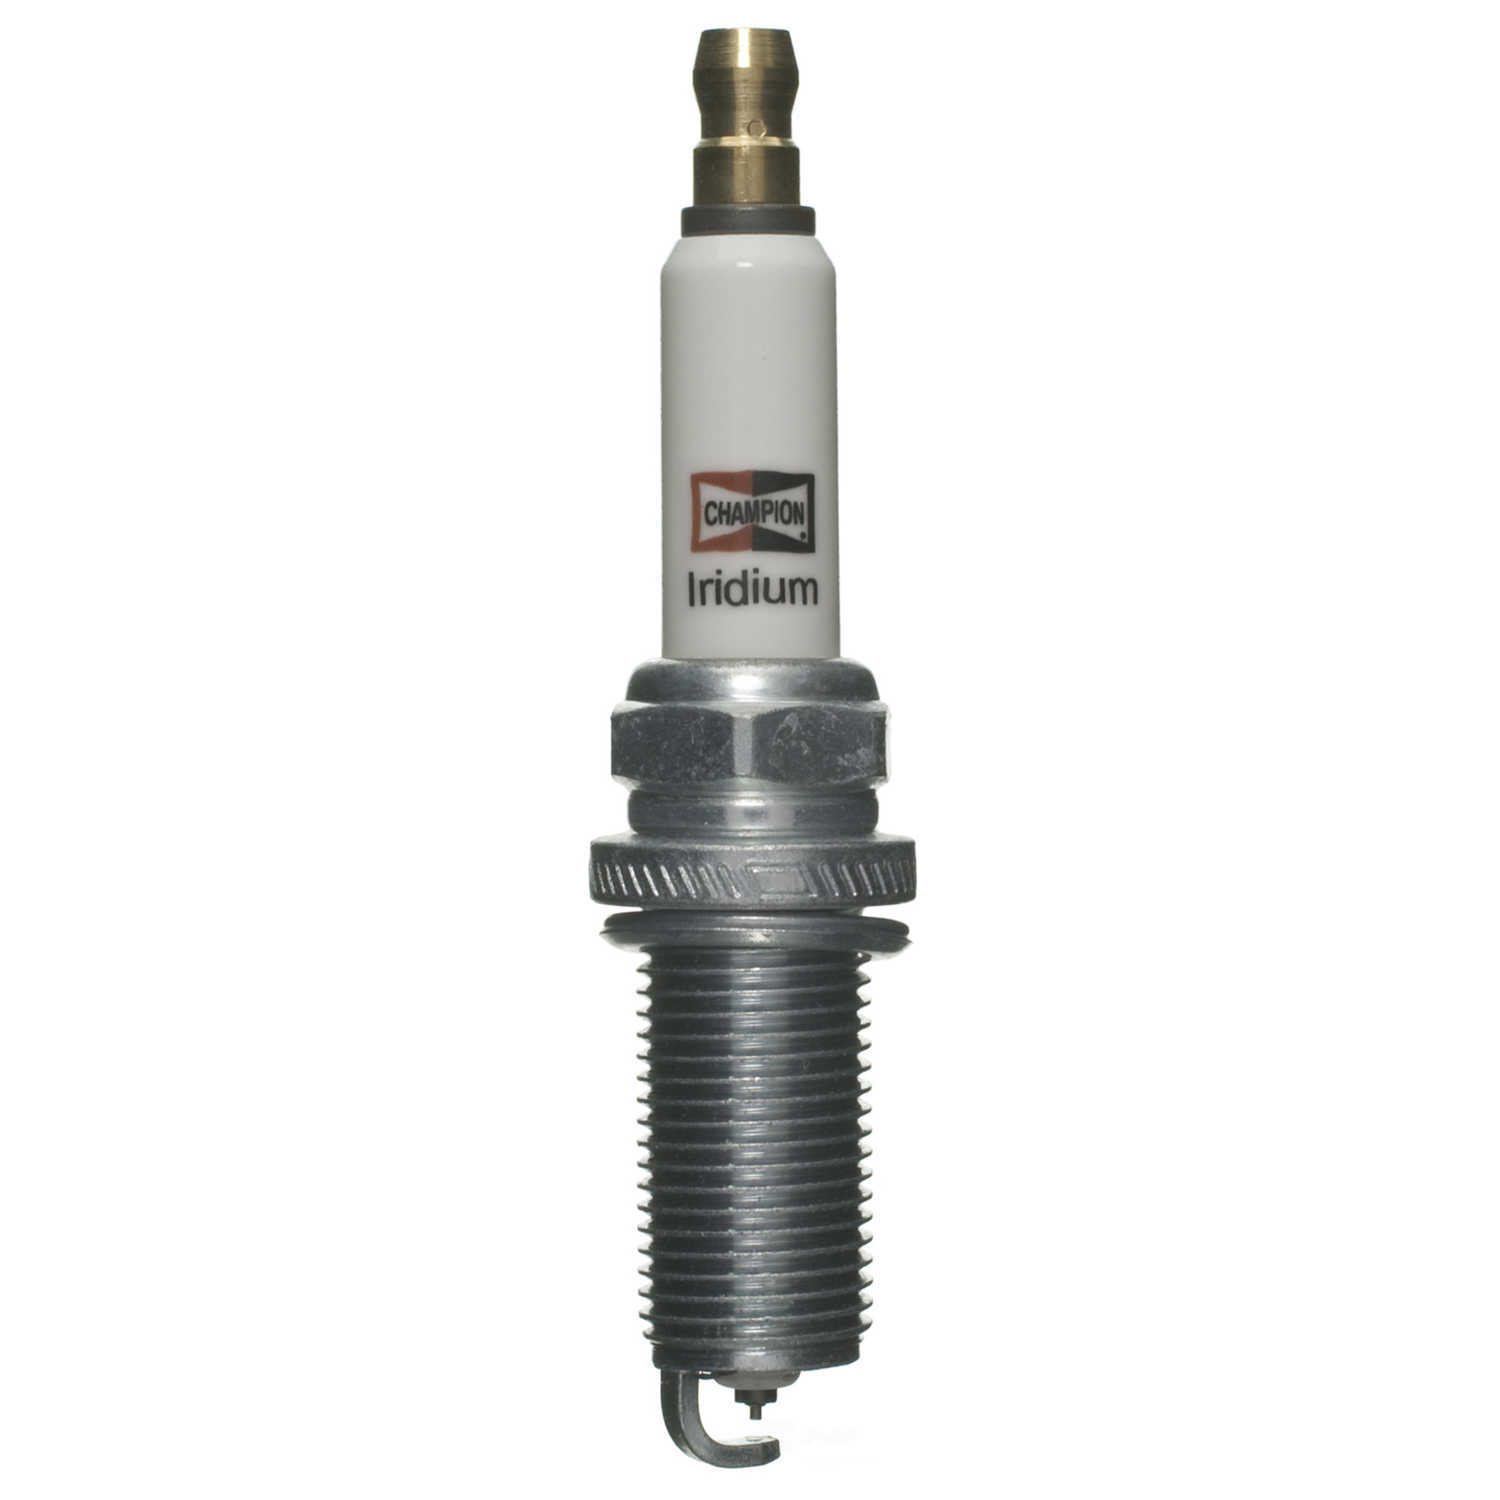 CHAMPION SPARK PLUGS - Iridium Spark Plug - CHA 9033